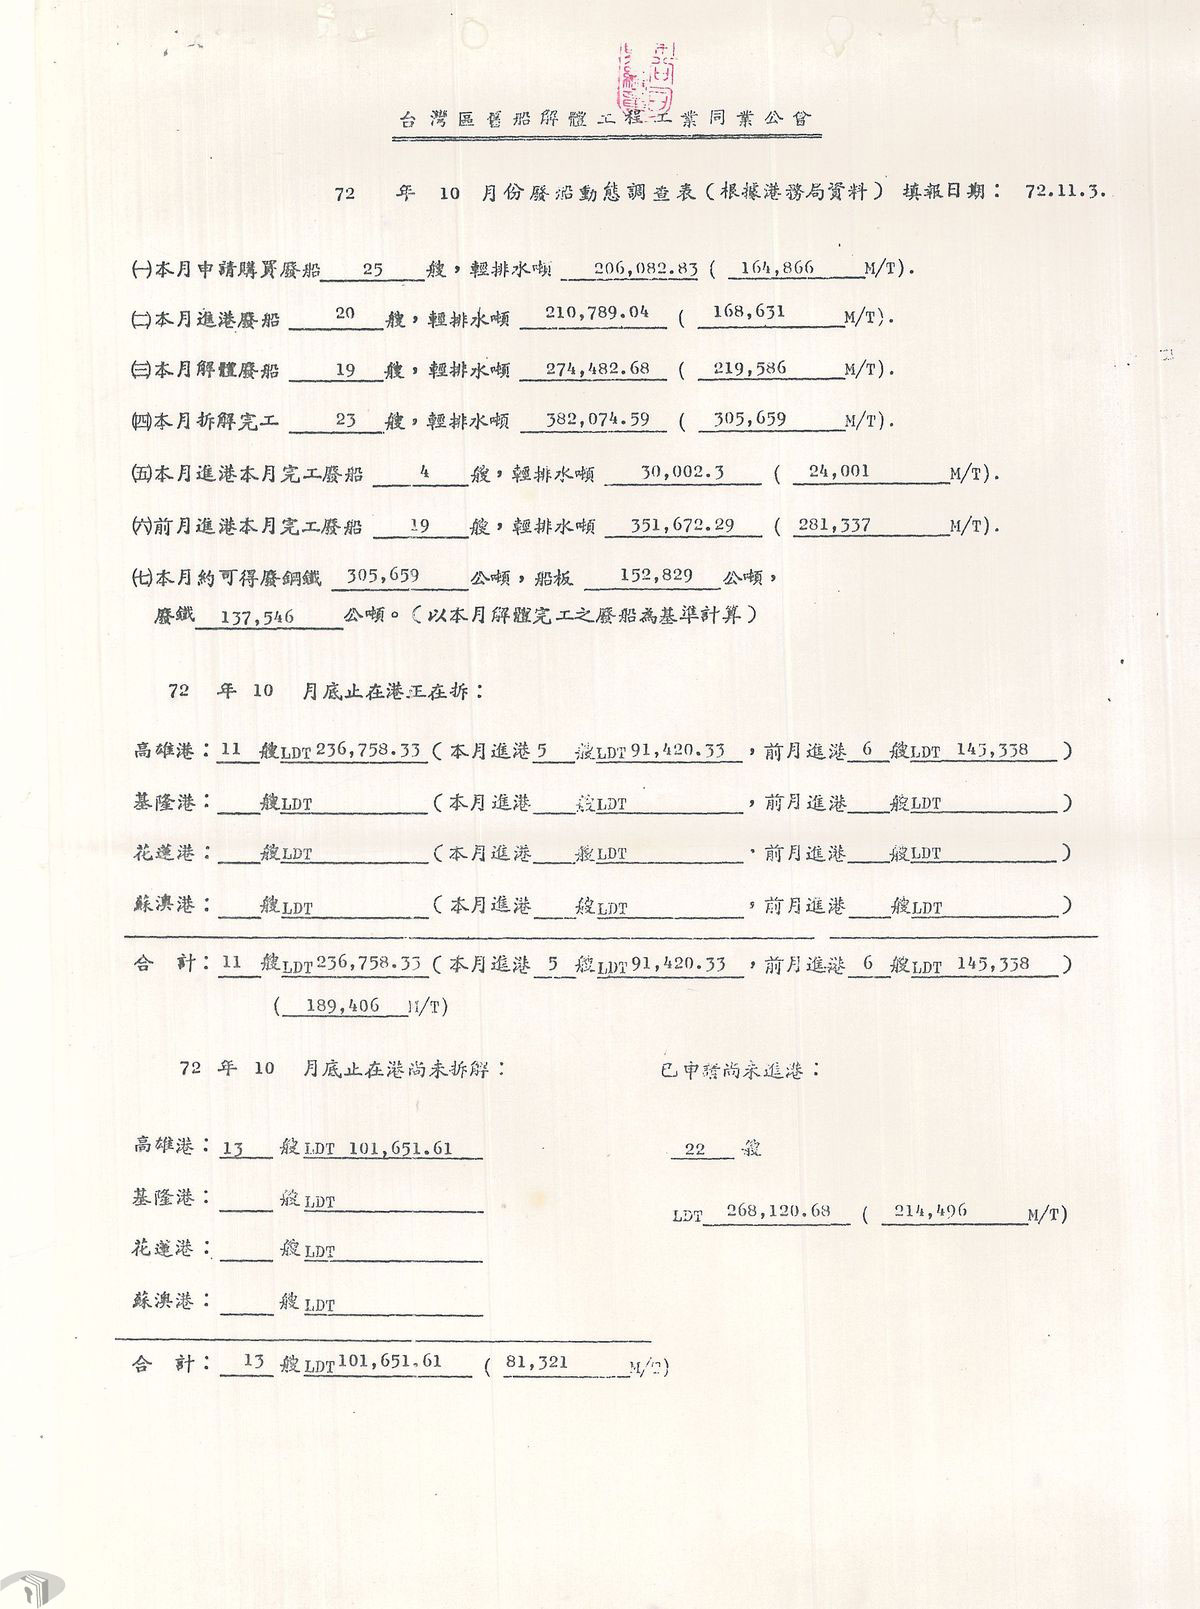 圖13 1983年廢船動態調查表